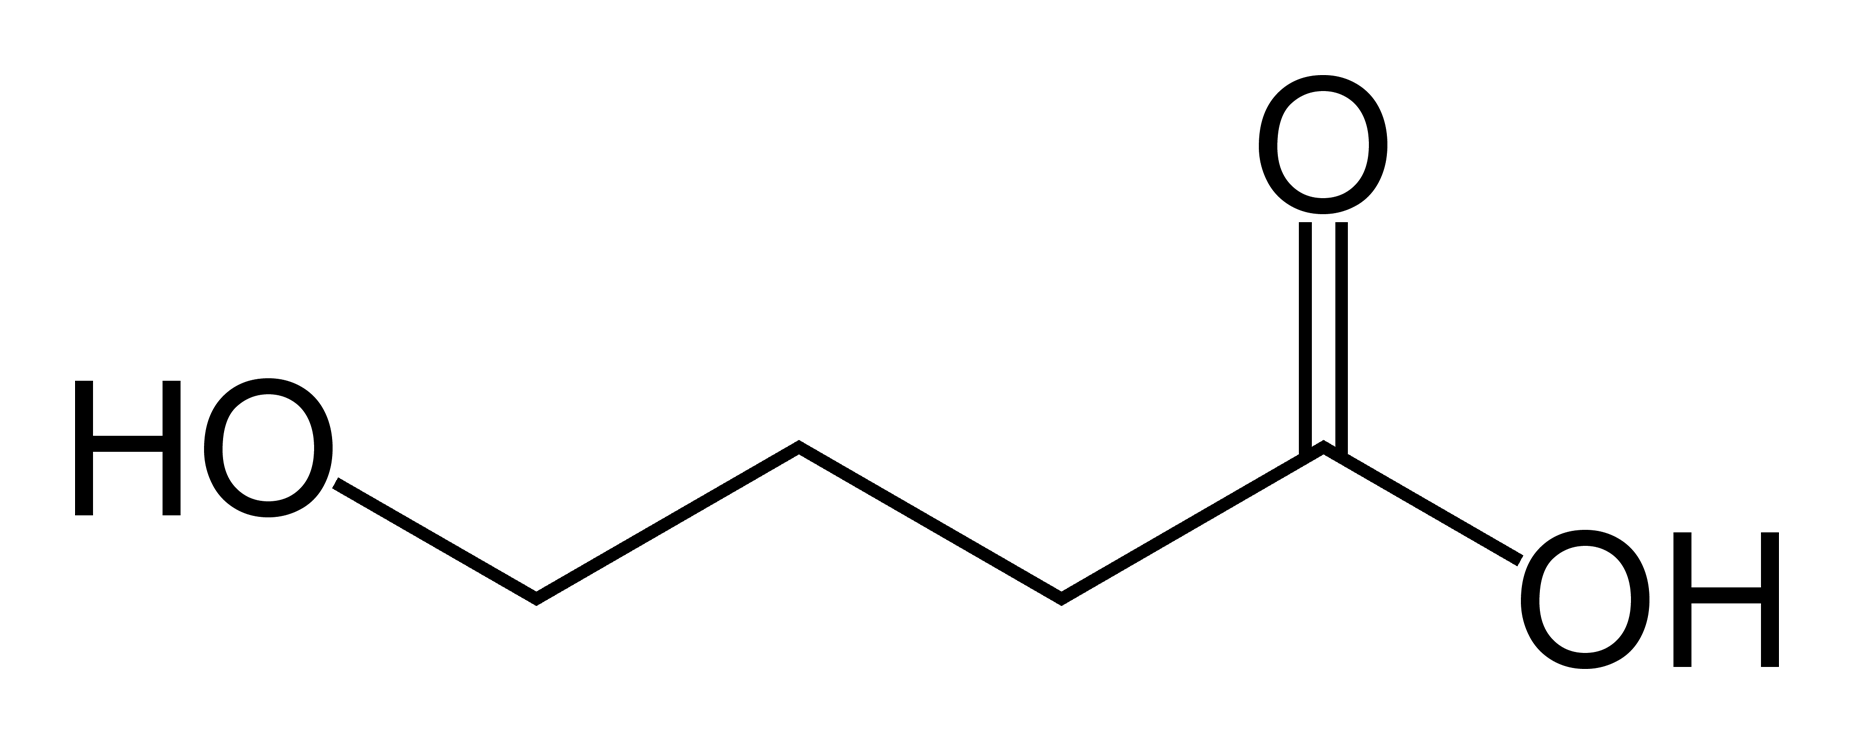 4-hydroxybutanoic-acid.png